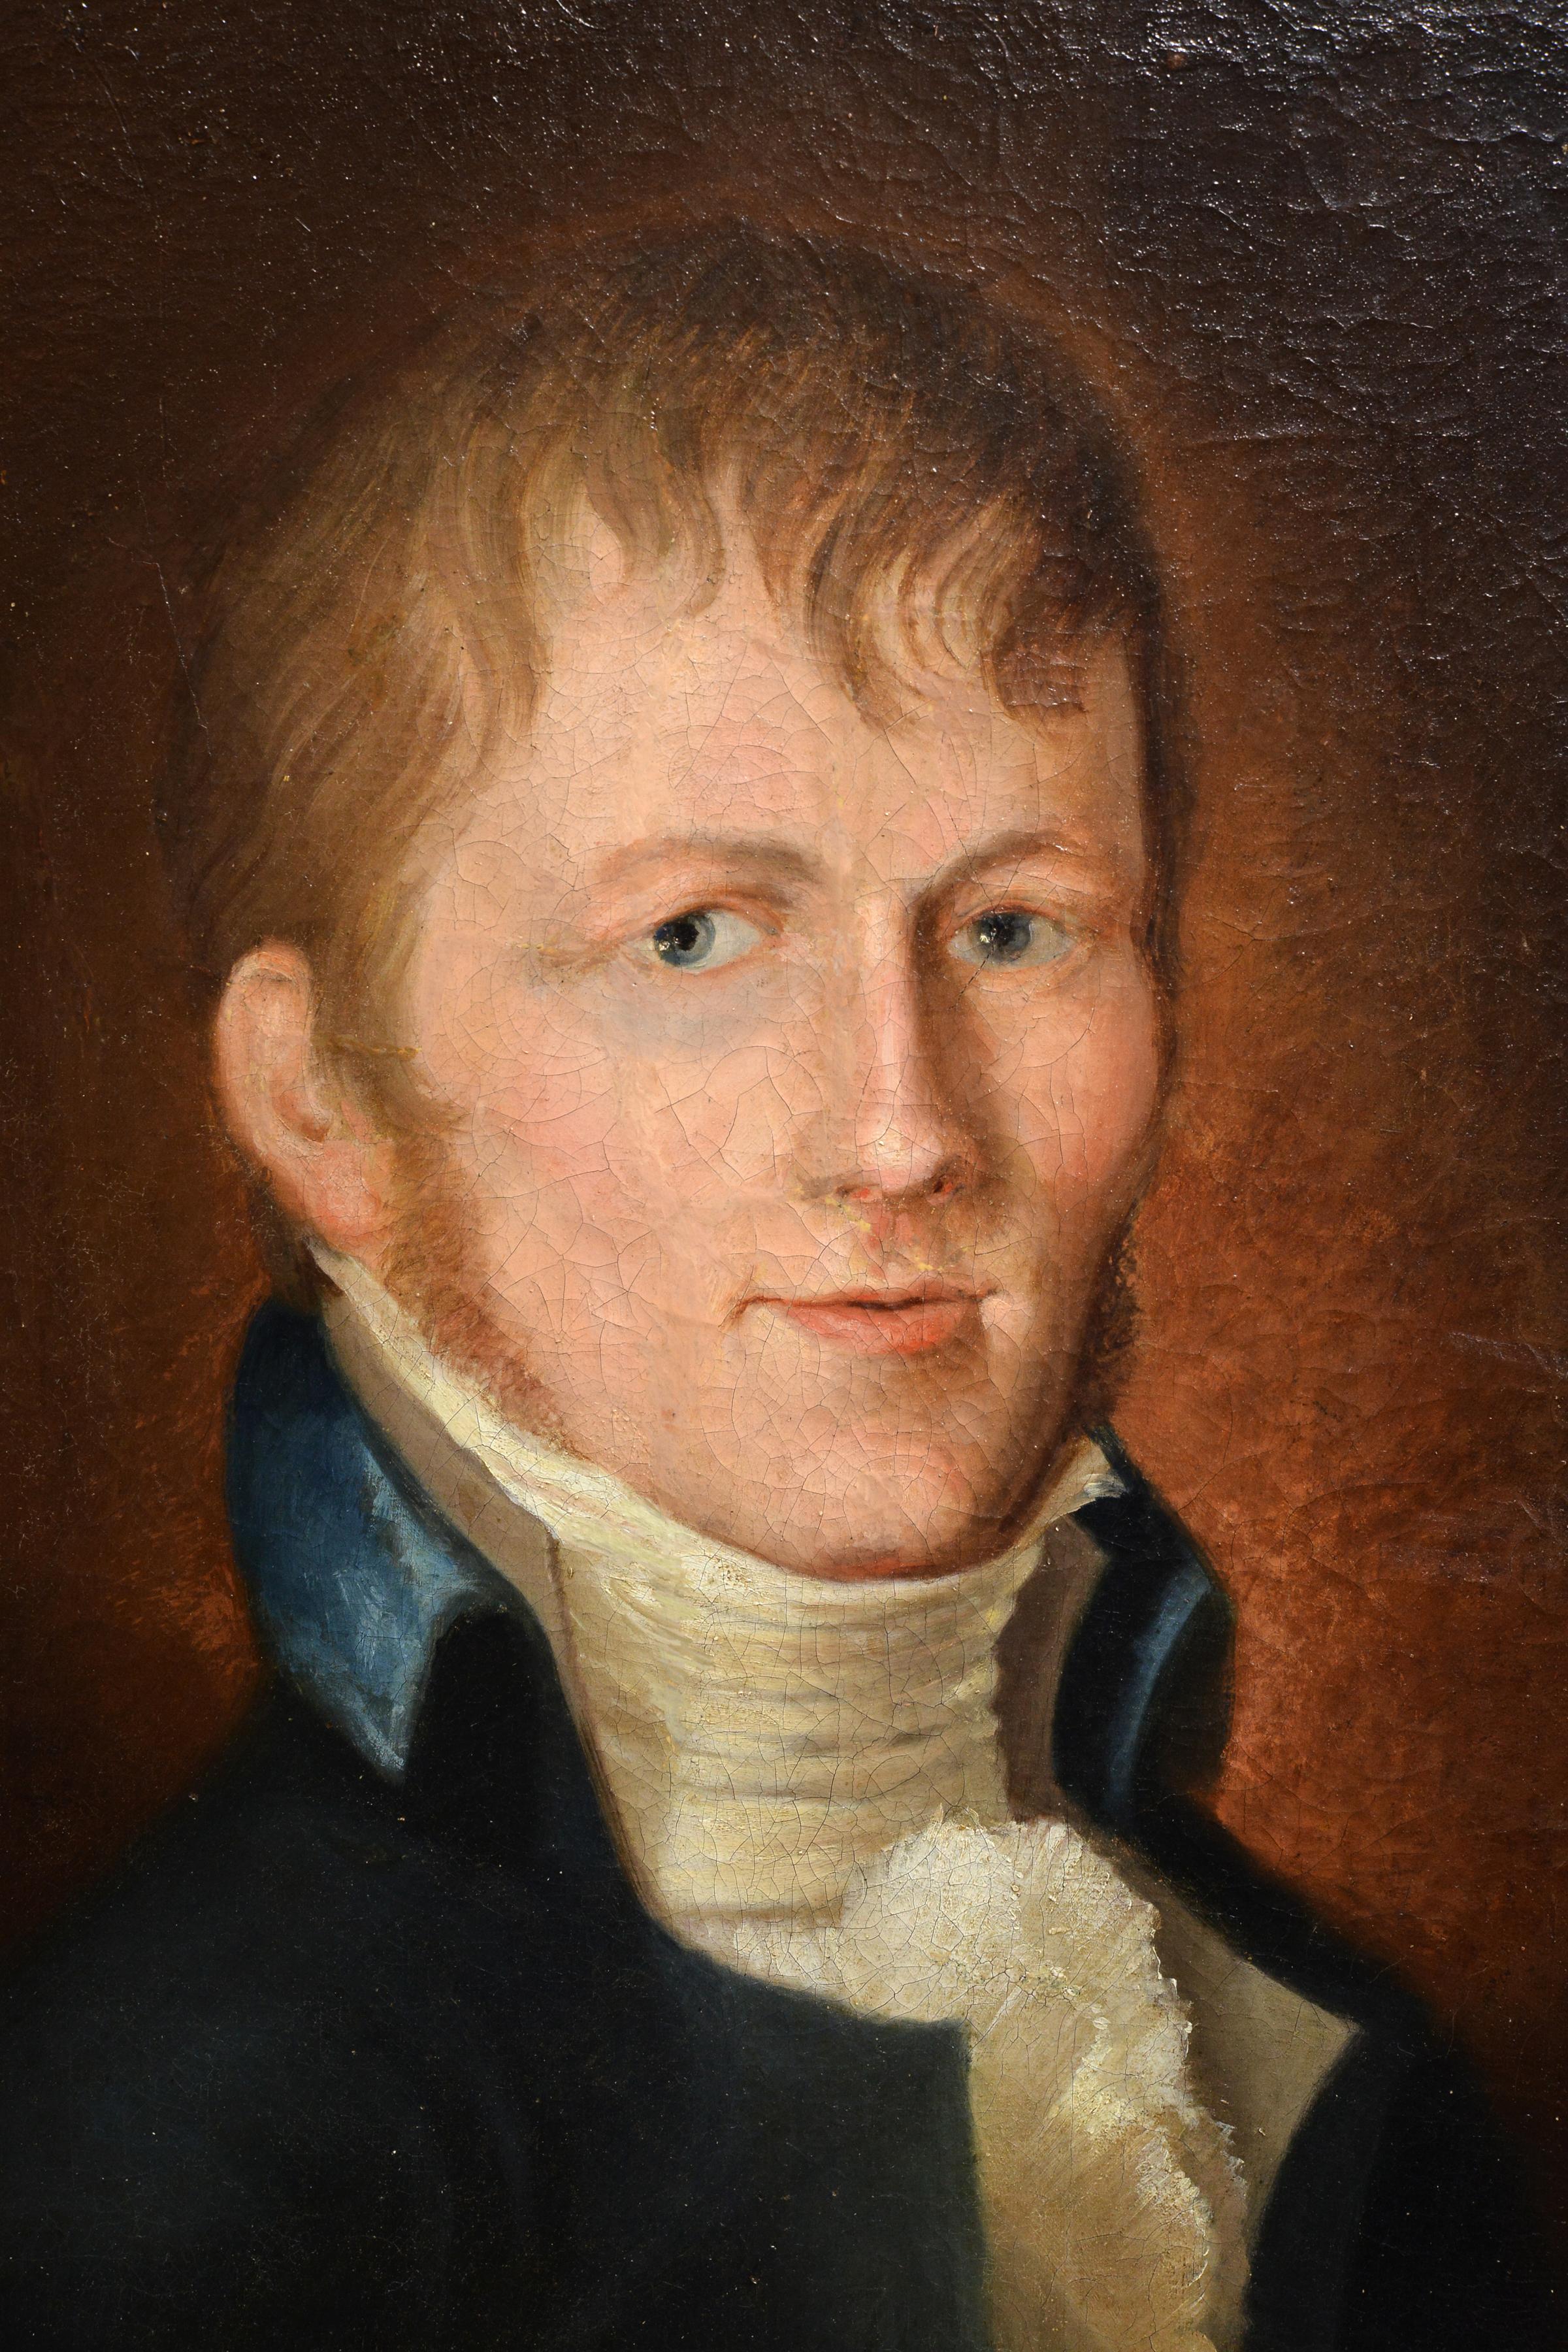 Porträt eines jungen Gentleman von dem amerikanischen Samuel Morse, Erfinder des Telegraph Code 19C (Realismus), Painting, von Samuel Finley Breese Morse